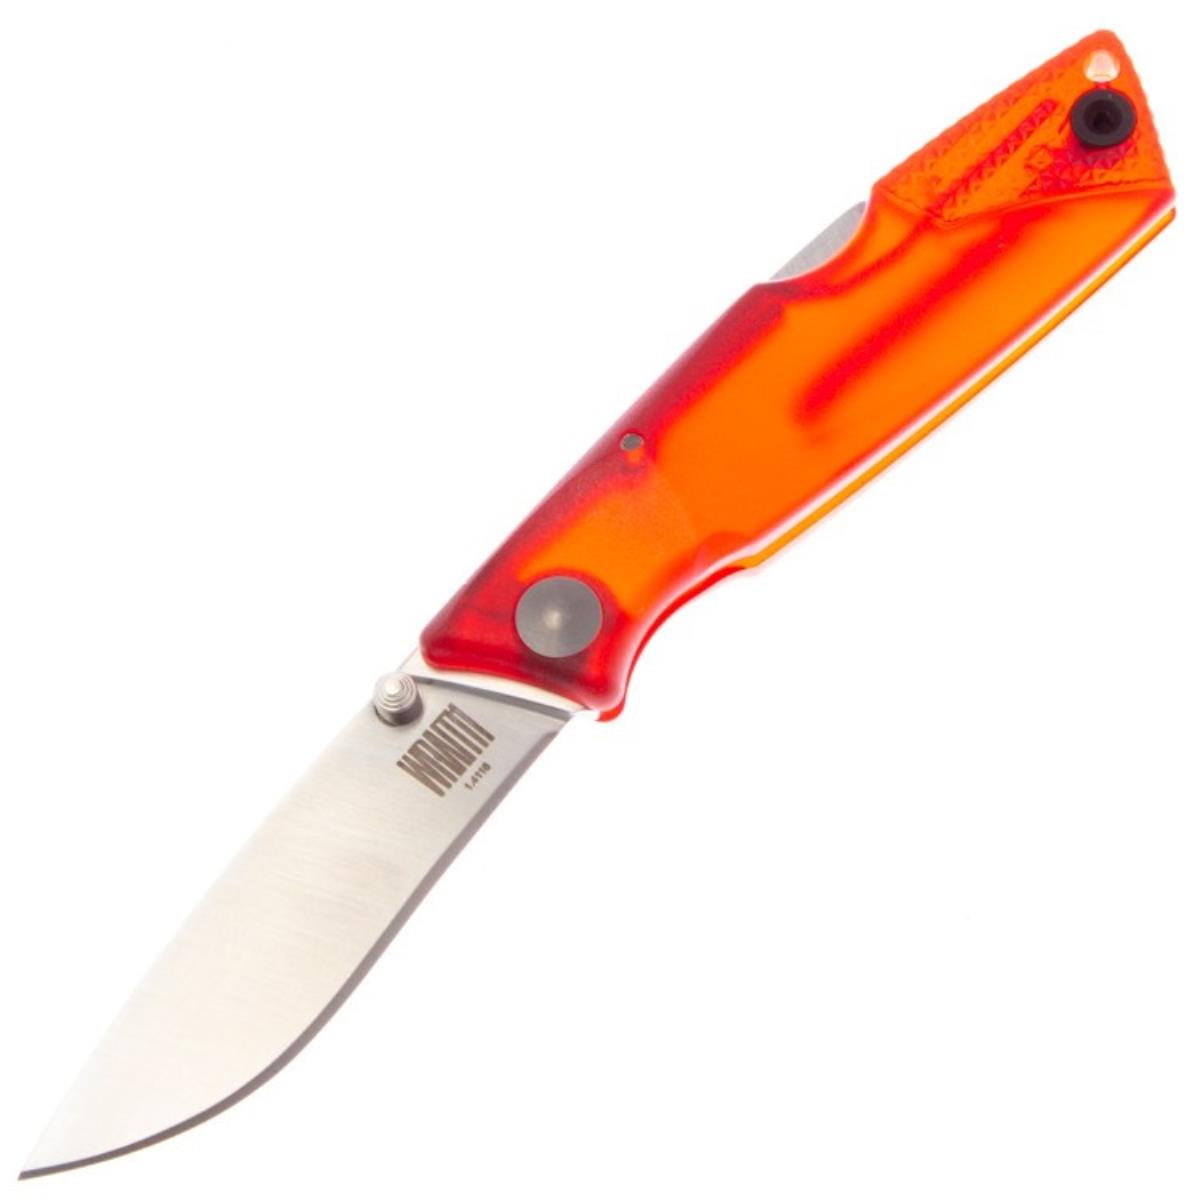 Нож Wraith Ice Series Fire складн.,красная полимерная рукоять, клинок AUS8 (8798RED)  ONTARIO нож складной ontario rat 2 сталь d2 клинок black рукоять carbon